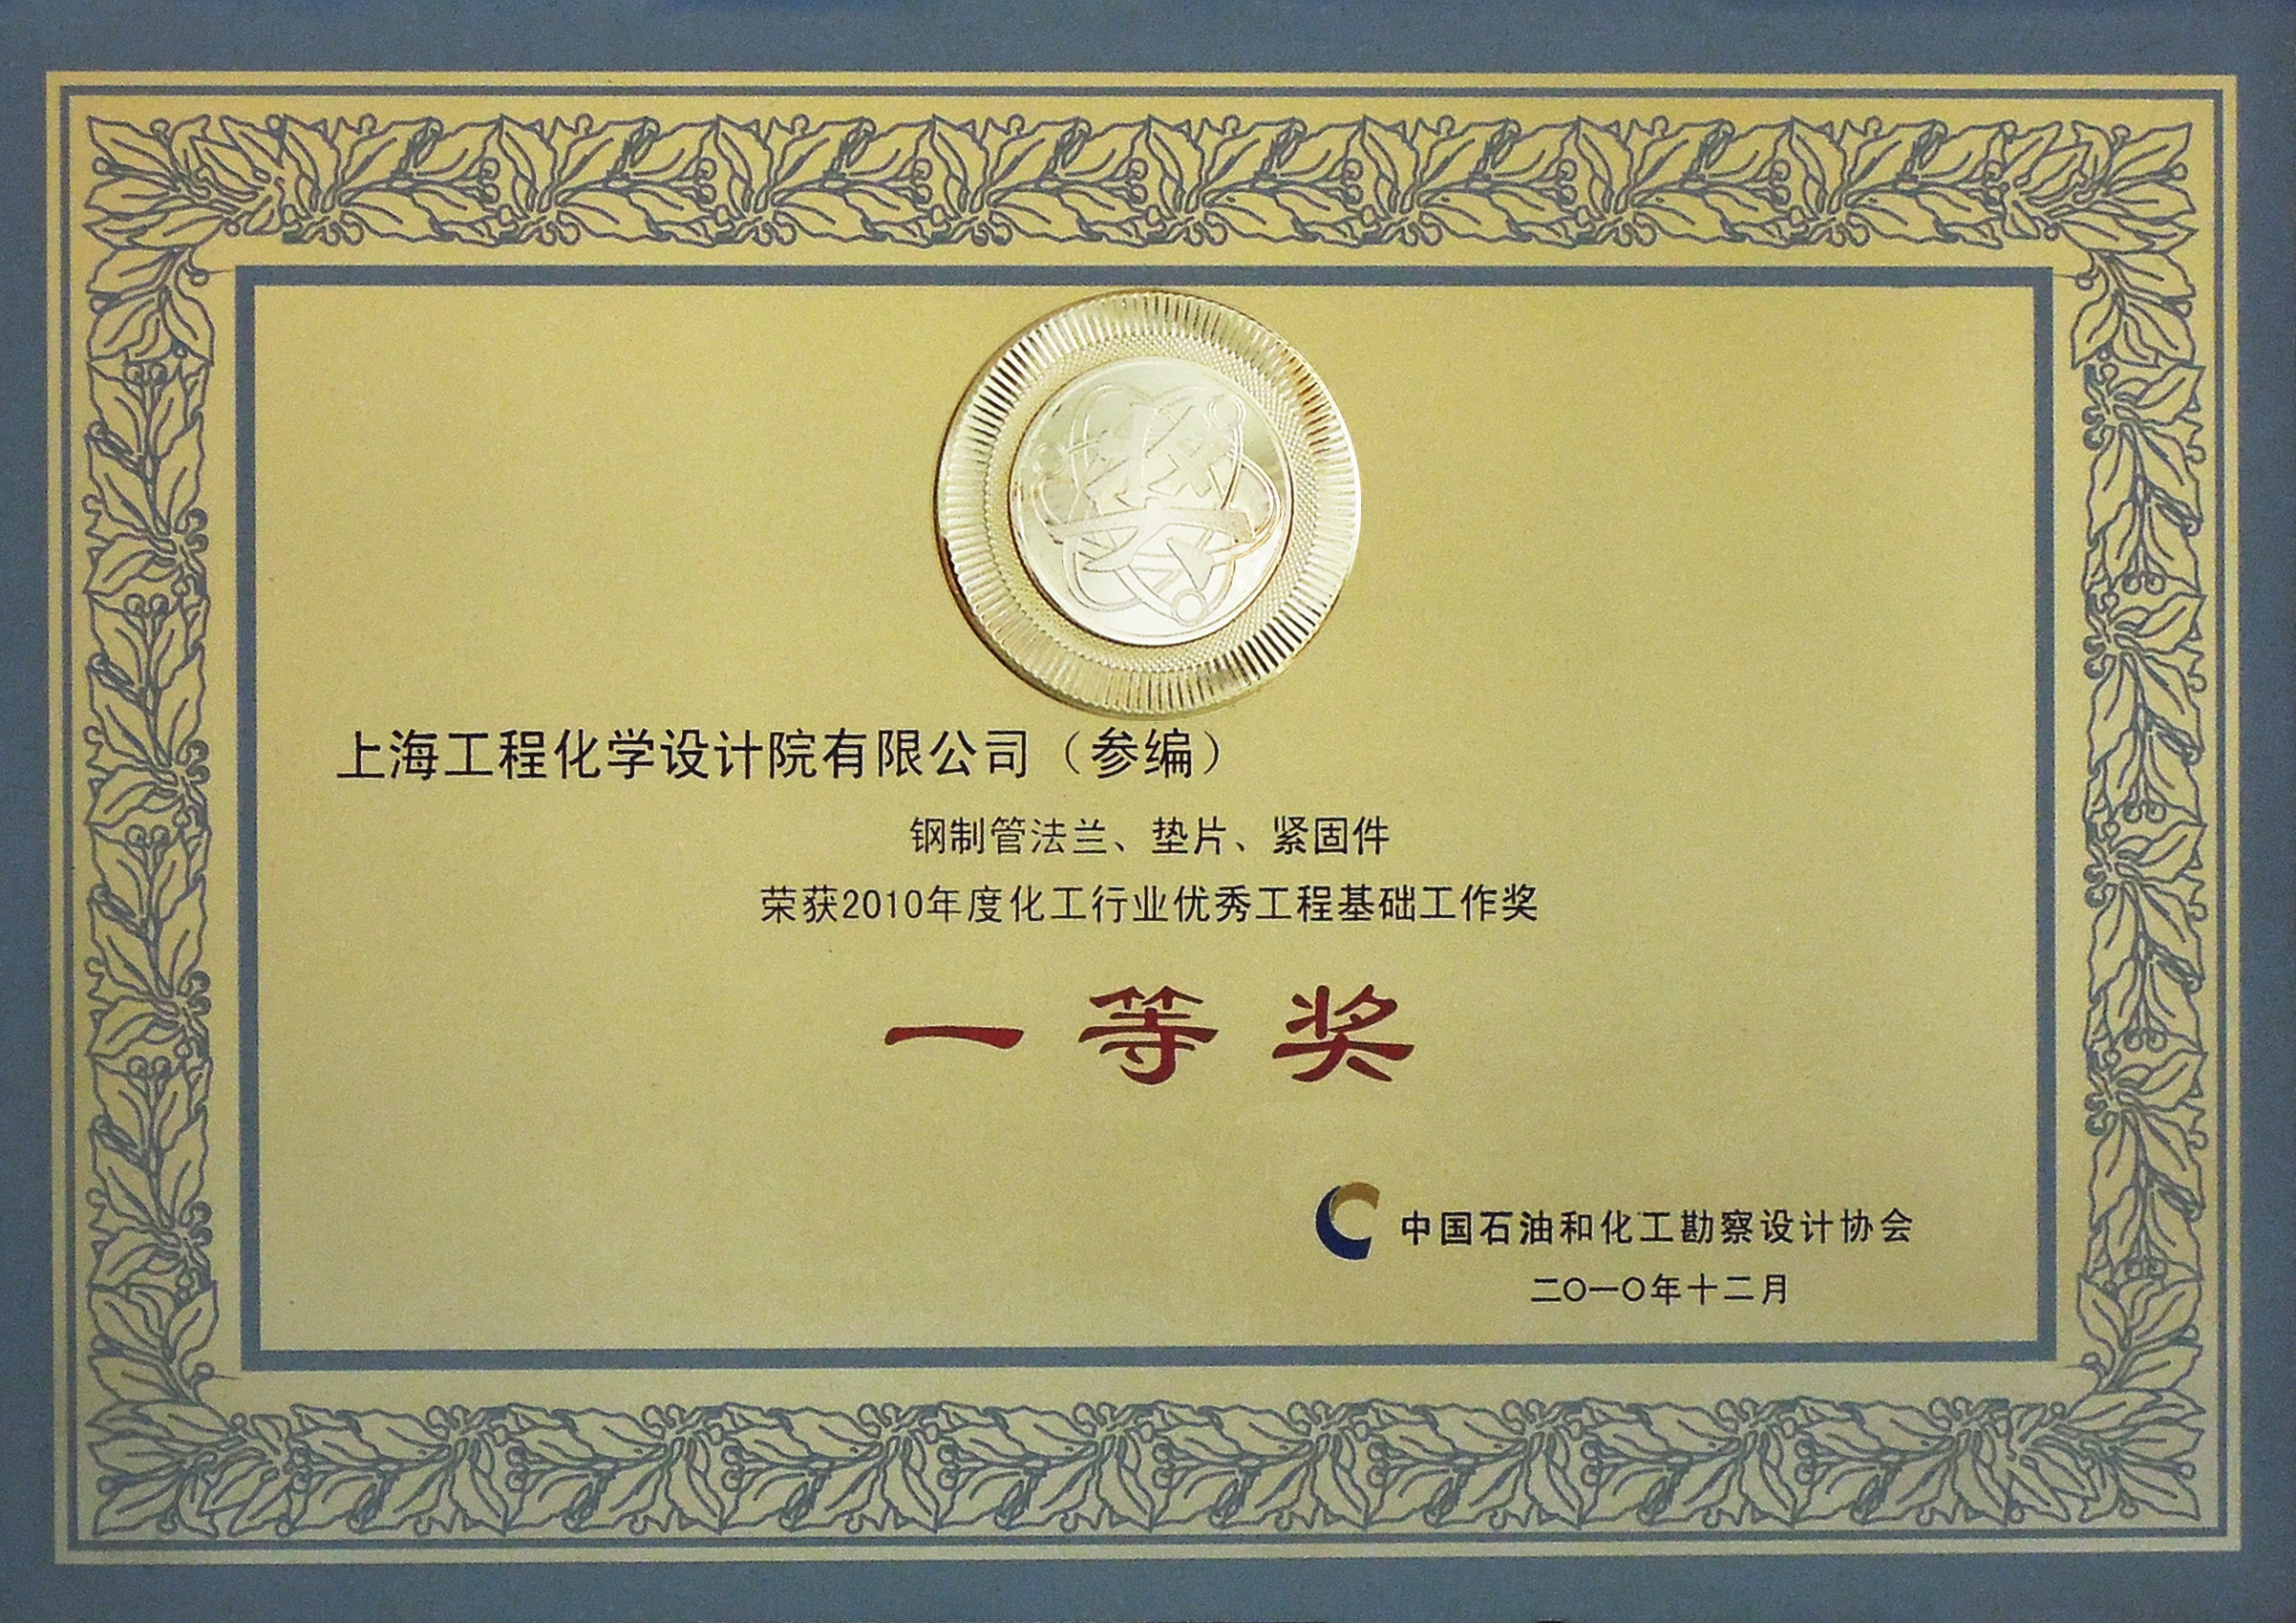 钢制管法兰、垫片、紧固件荣获2010年度化工行业优秀工程基础工作奖 一等奖